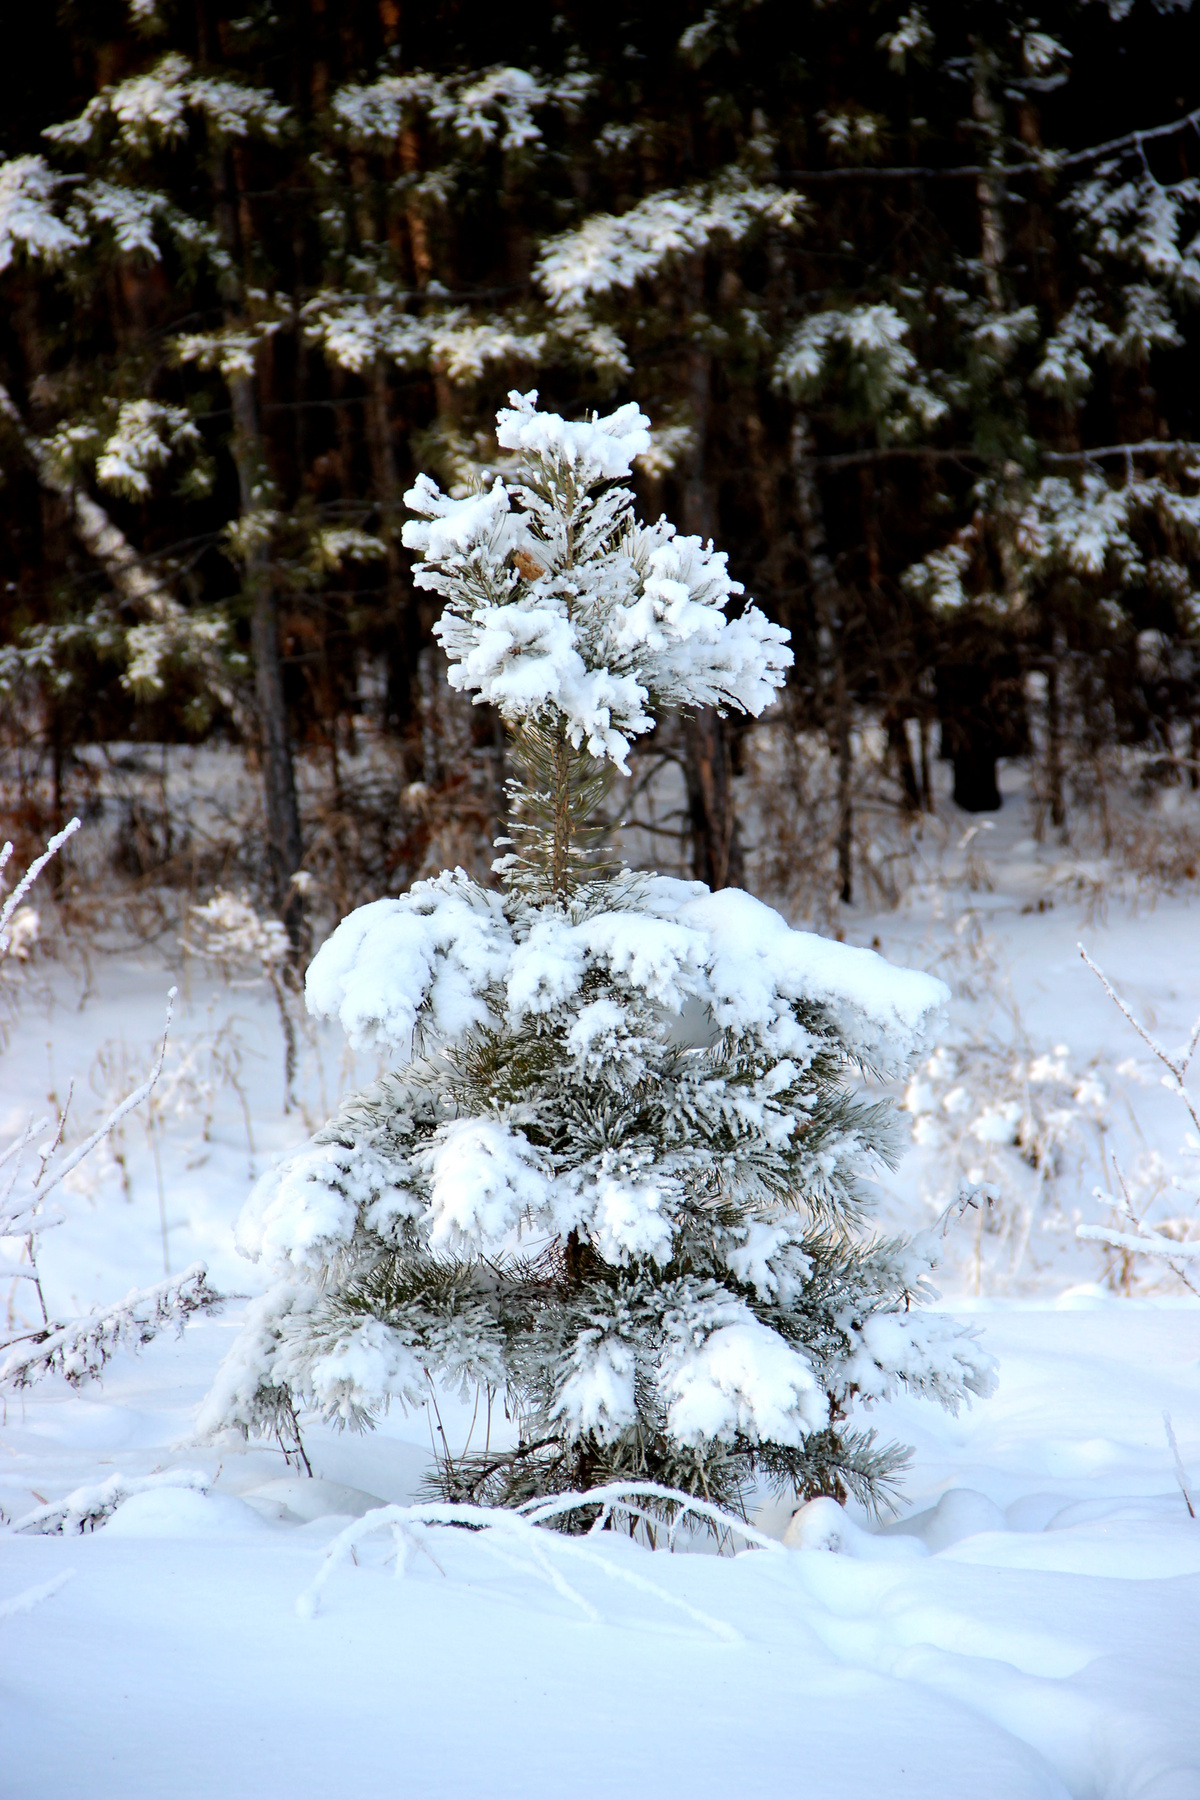 Малышка в шубке Сибирь зима иней серебро снег деревья